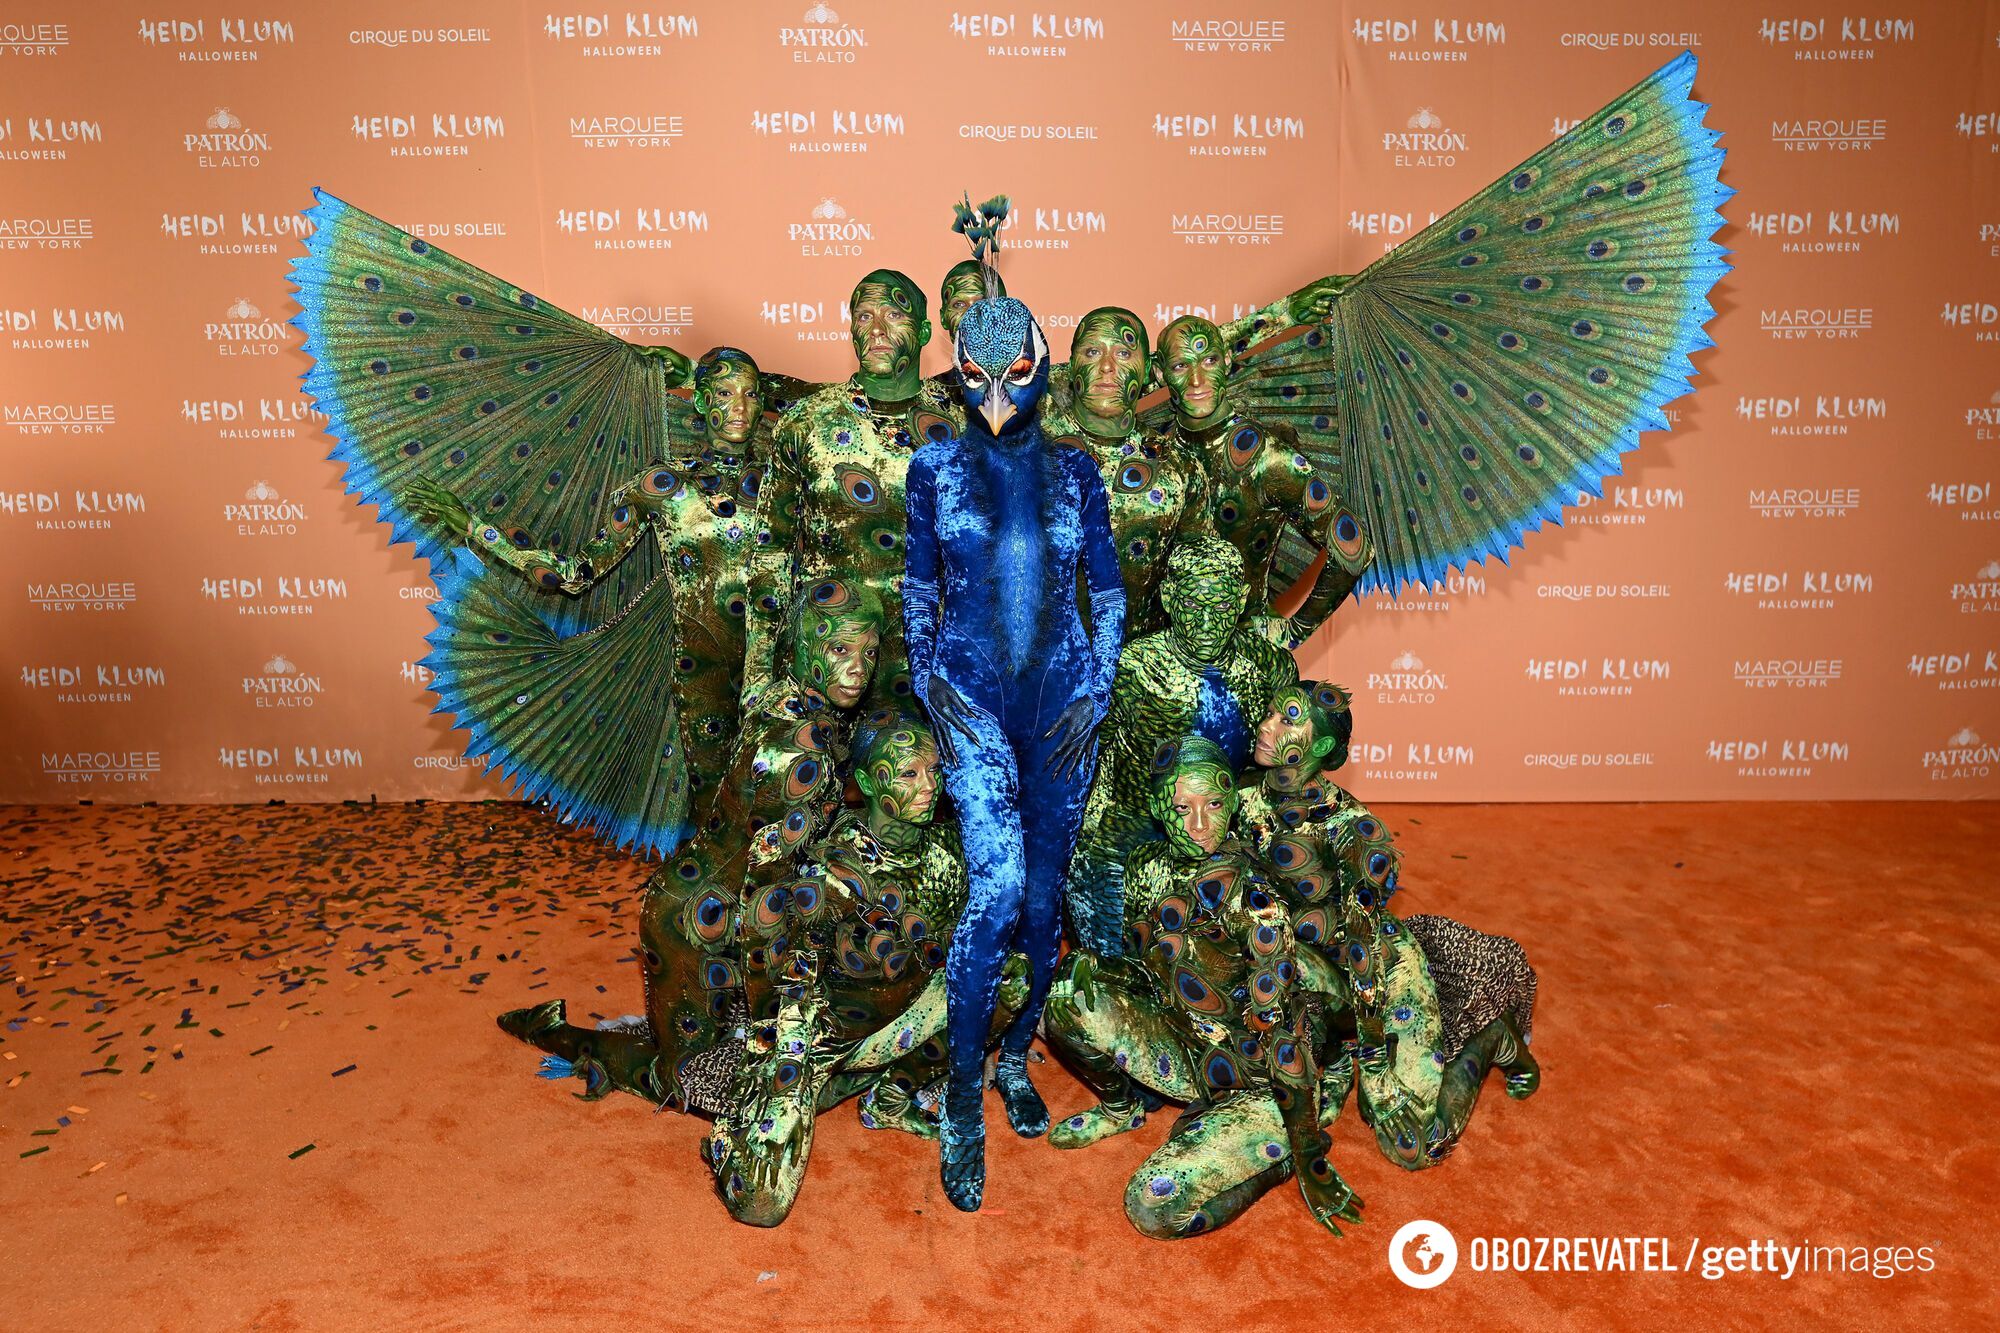 "Королева Хэллоуина" Хайди Клум снова шокировала публику: 10 самых эпатажных костюмов супермодели